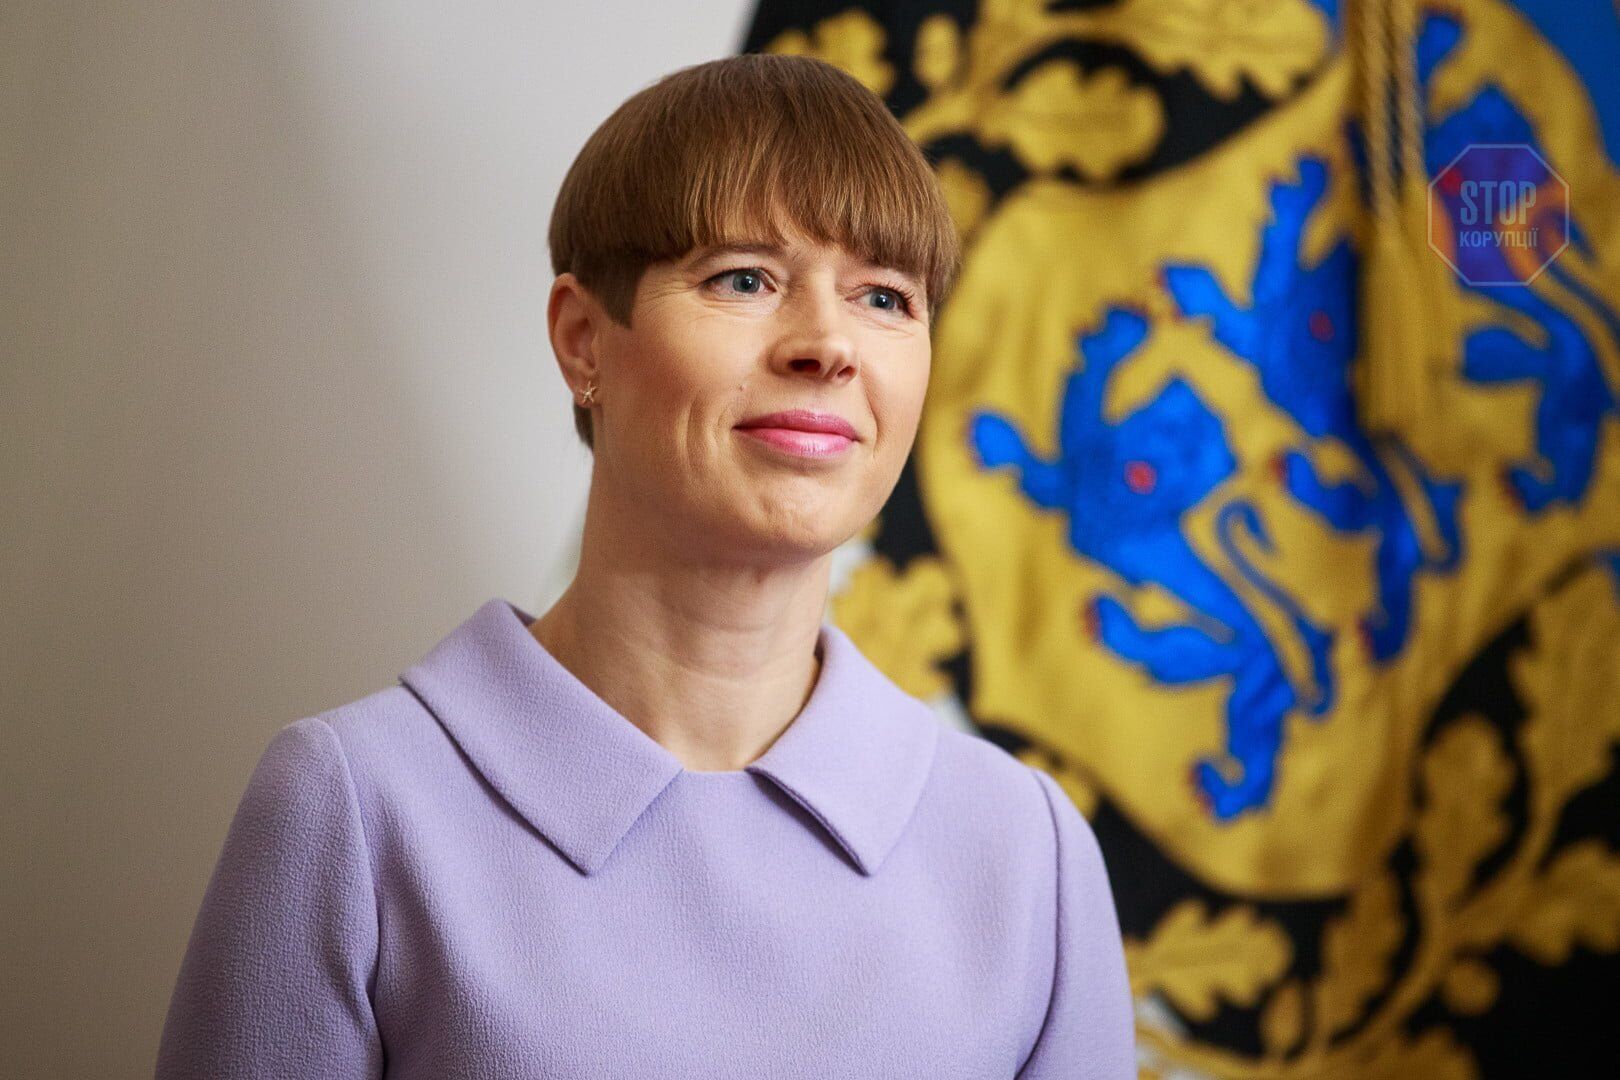  Президентка Естонії Керсті Кальюлайд       Фото: informator.press